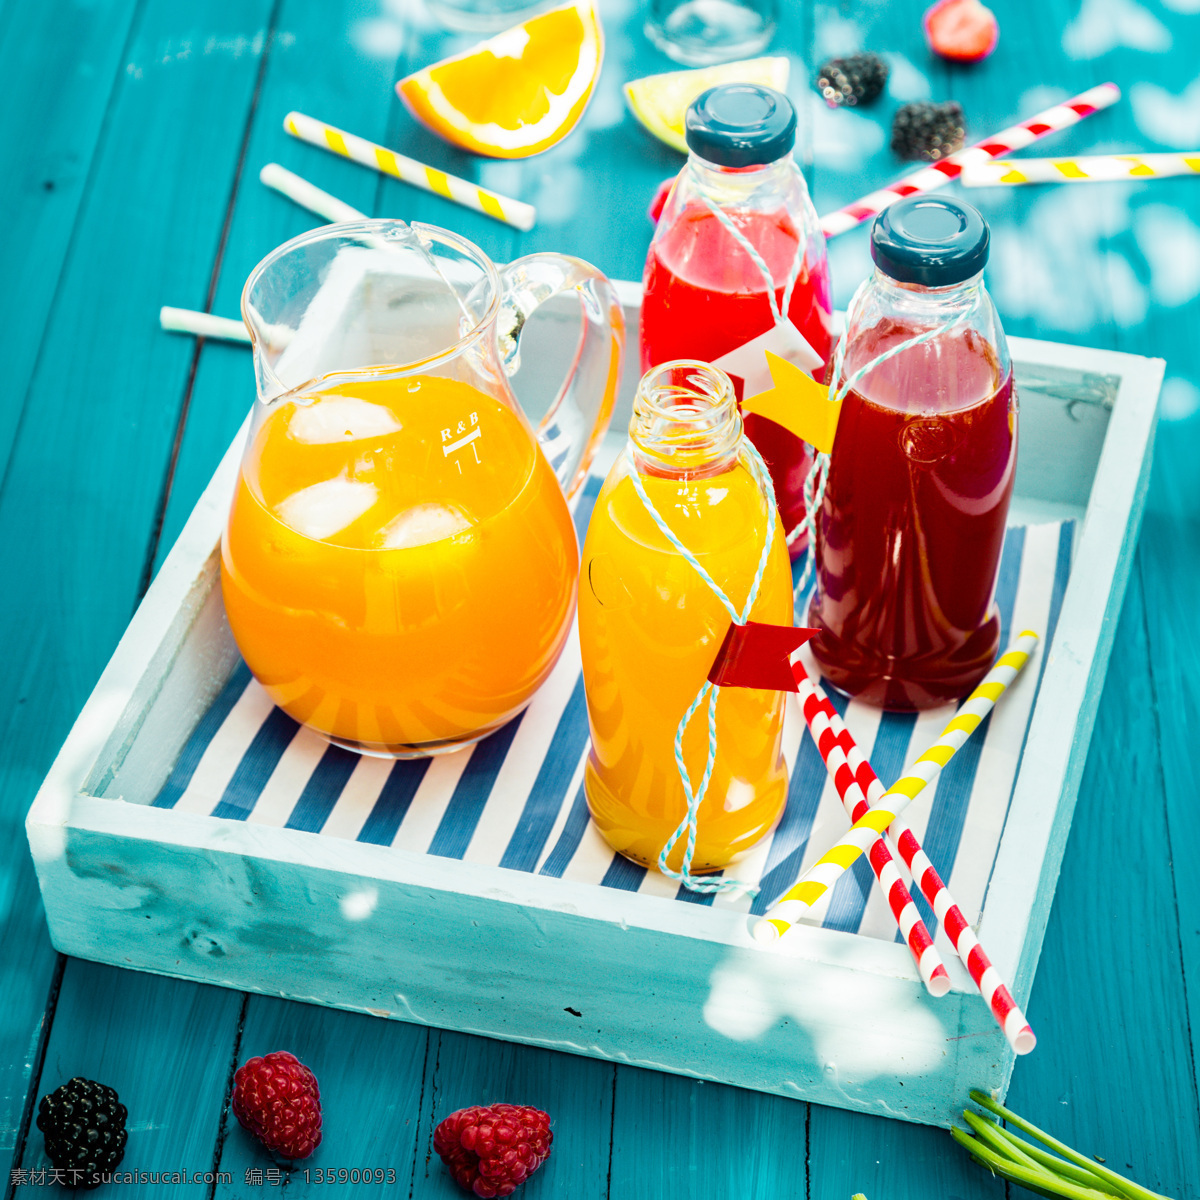 各种 水果 饮料 各种水果饮料 水果饮料 树莓 橙子 吸管 瓶子 蓝色木板背景 其他类别 生活百科